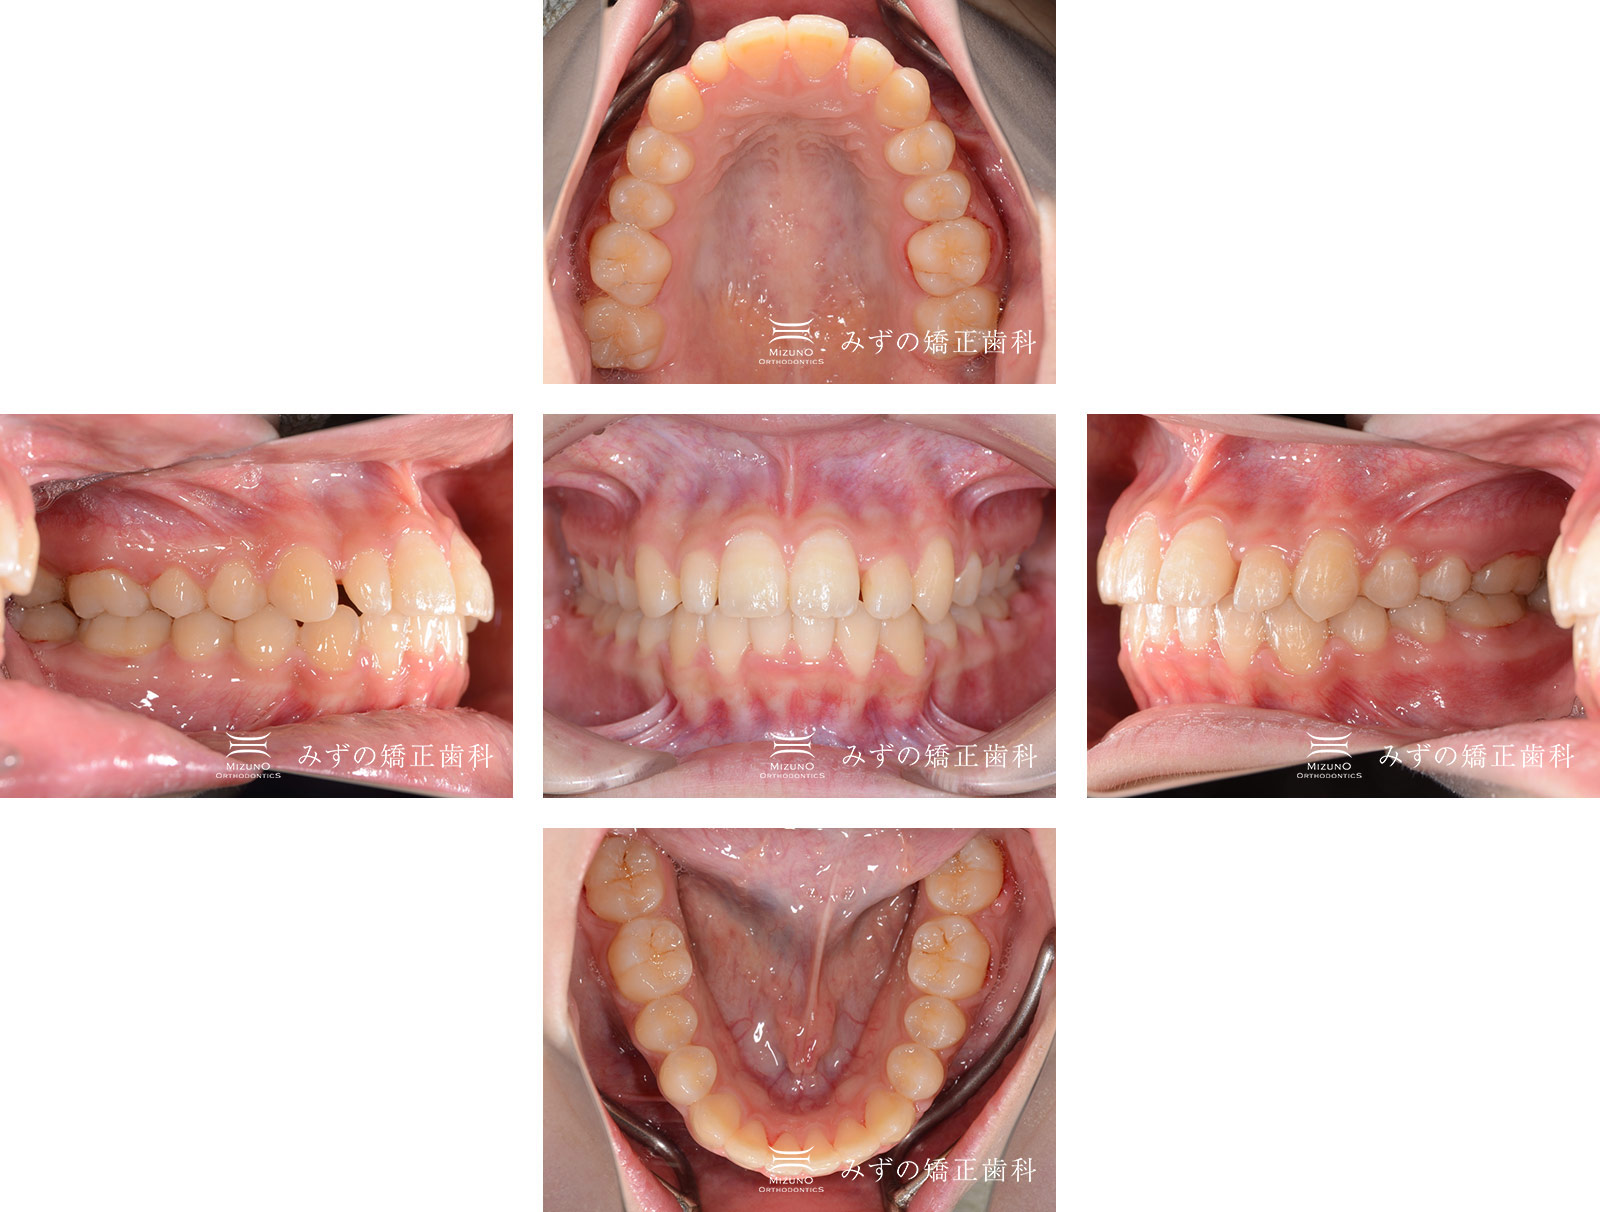 ガタガタの歯 症例画像